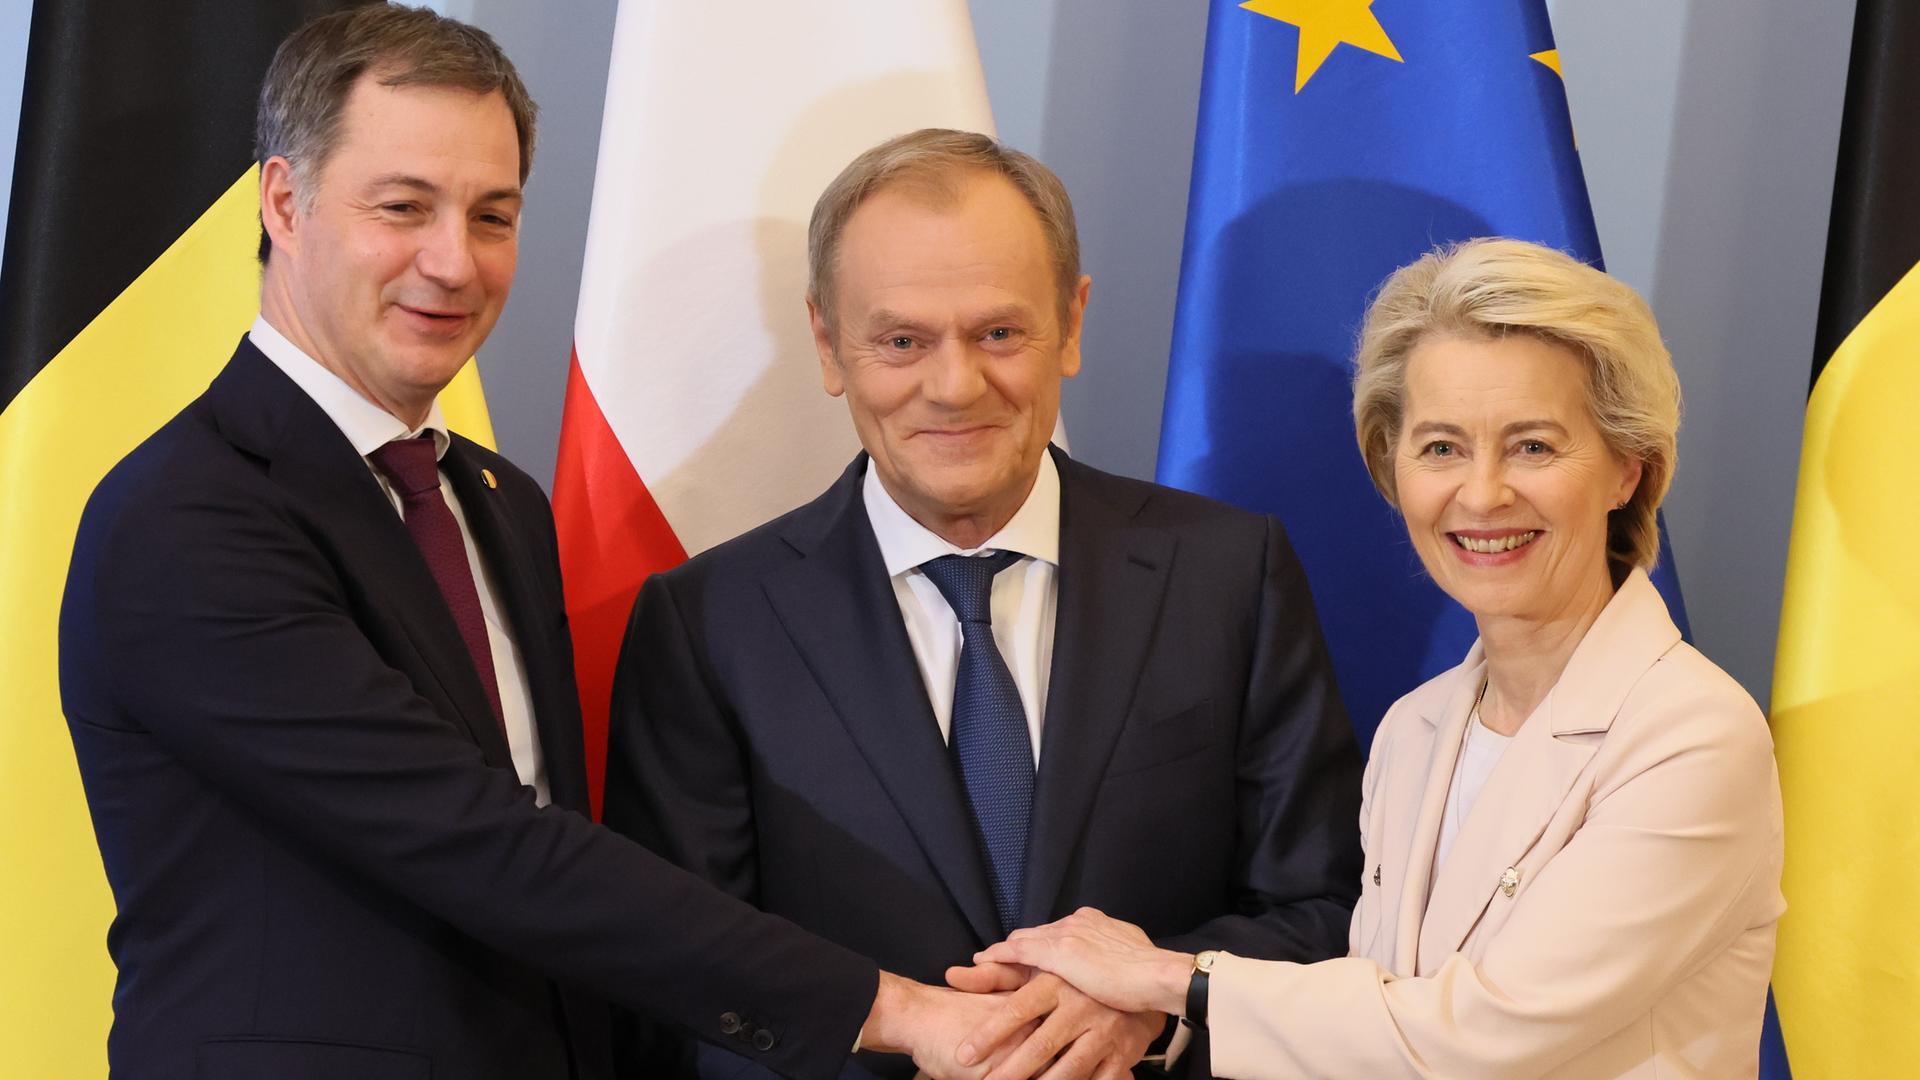 Warschau: Alexander De Croo, Premierminister von Belgien, Donald Tusk, Ministerpräsident von Polen, und Ursula von der Leyen, Präsidentin der Europäischen Kommission, stehen für Fotos vor einem Treffen in Warschau zusammen.